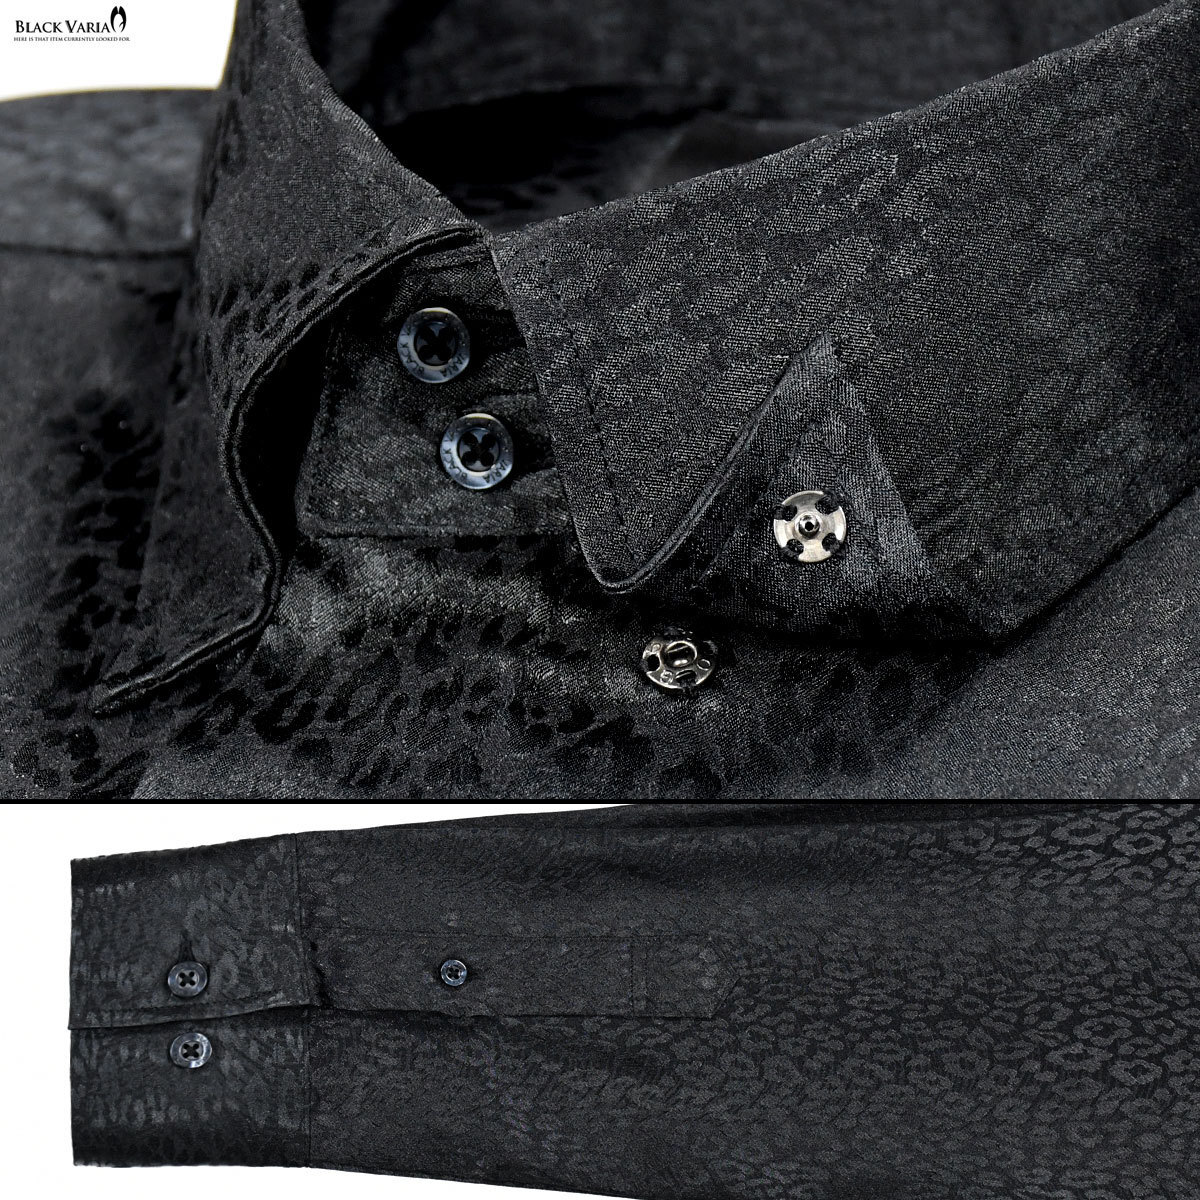 181710-bk BLACK VARIA ドゥエボットーニ ヒョウ柄 豹 ジャガード スナップダウン ドレスシャツ 日本製 メンズ(ブラック黒) S パーティー_画像5